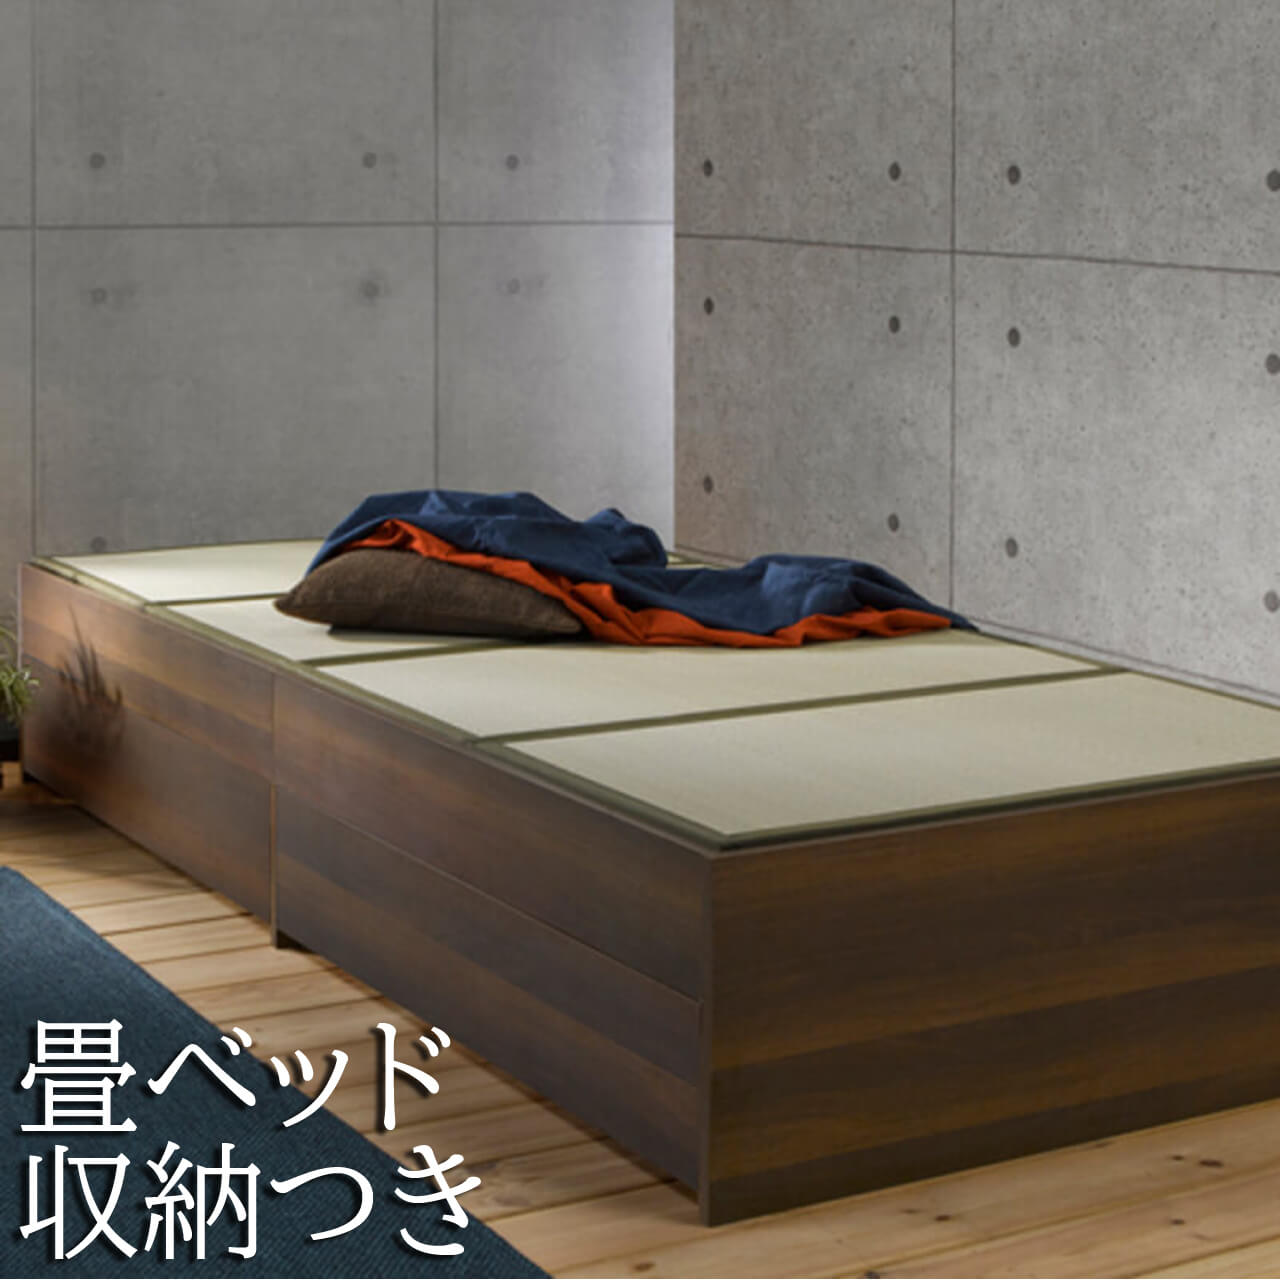 公式サイト 純日本製 出雲木工株式会社 シングルベッド 廃盤品 